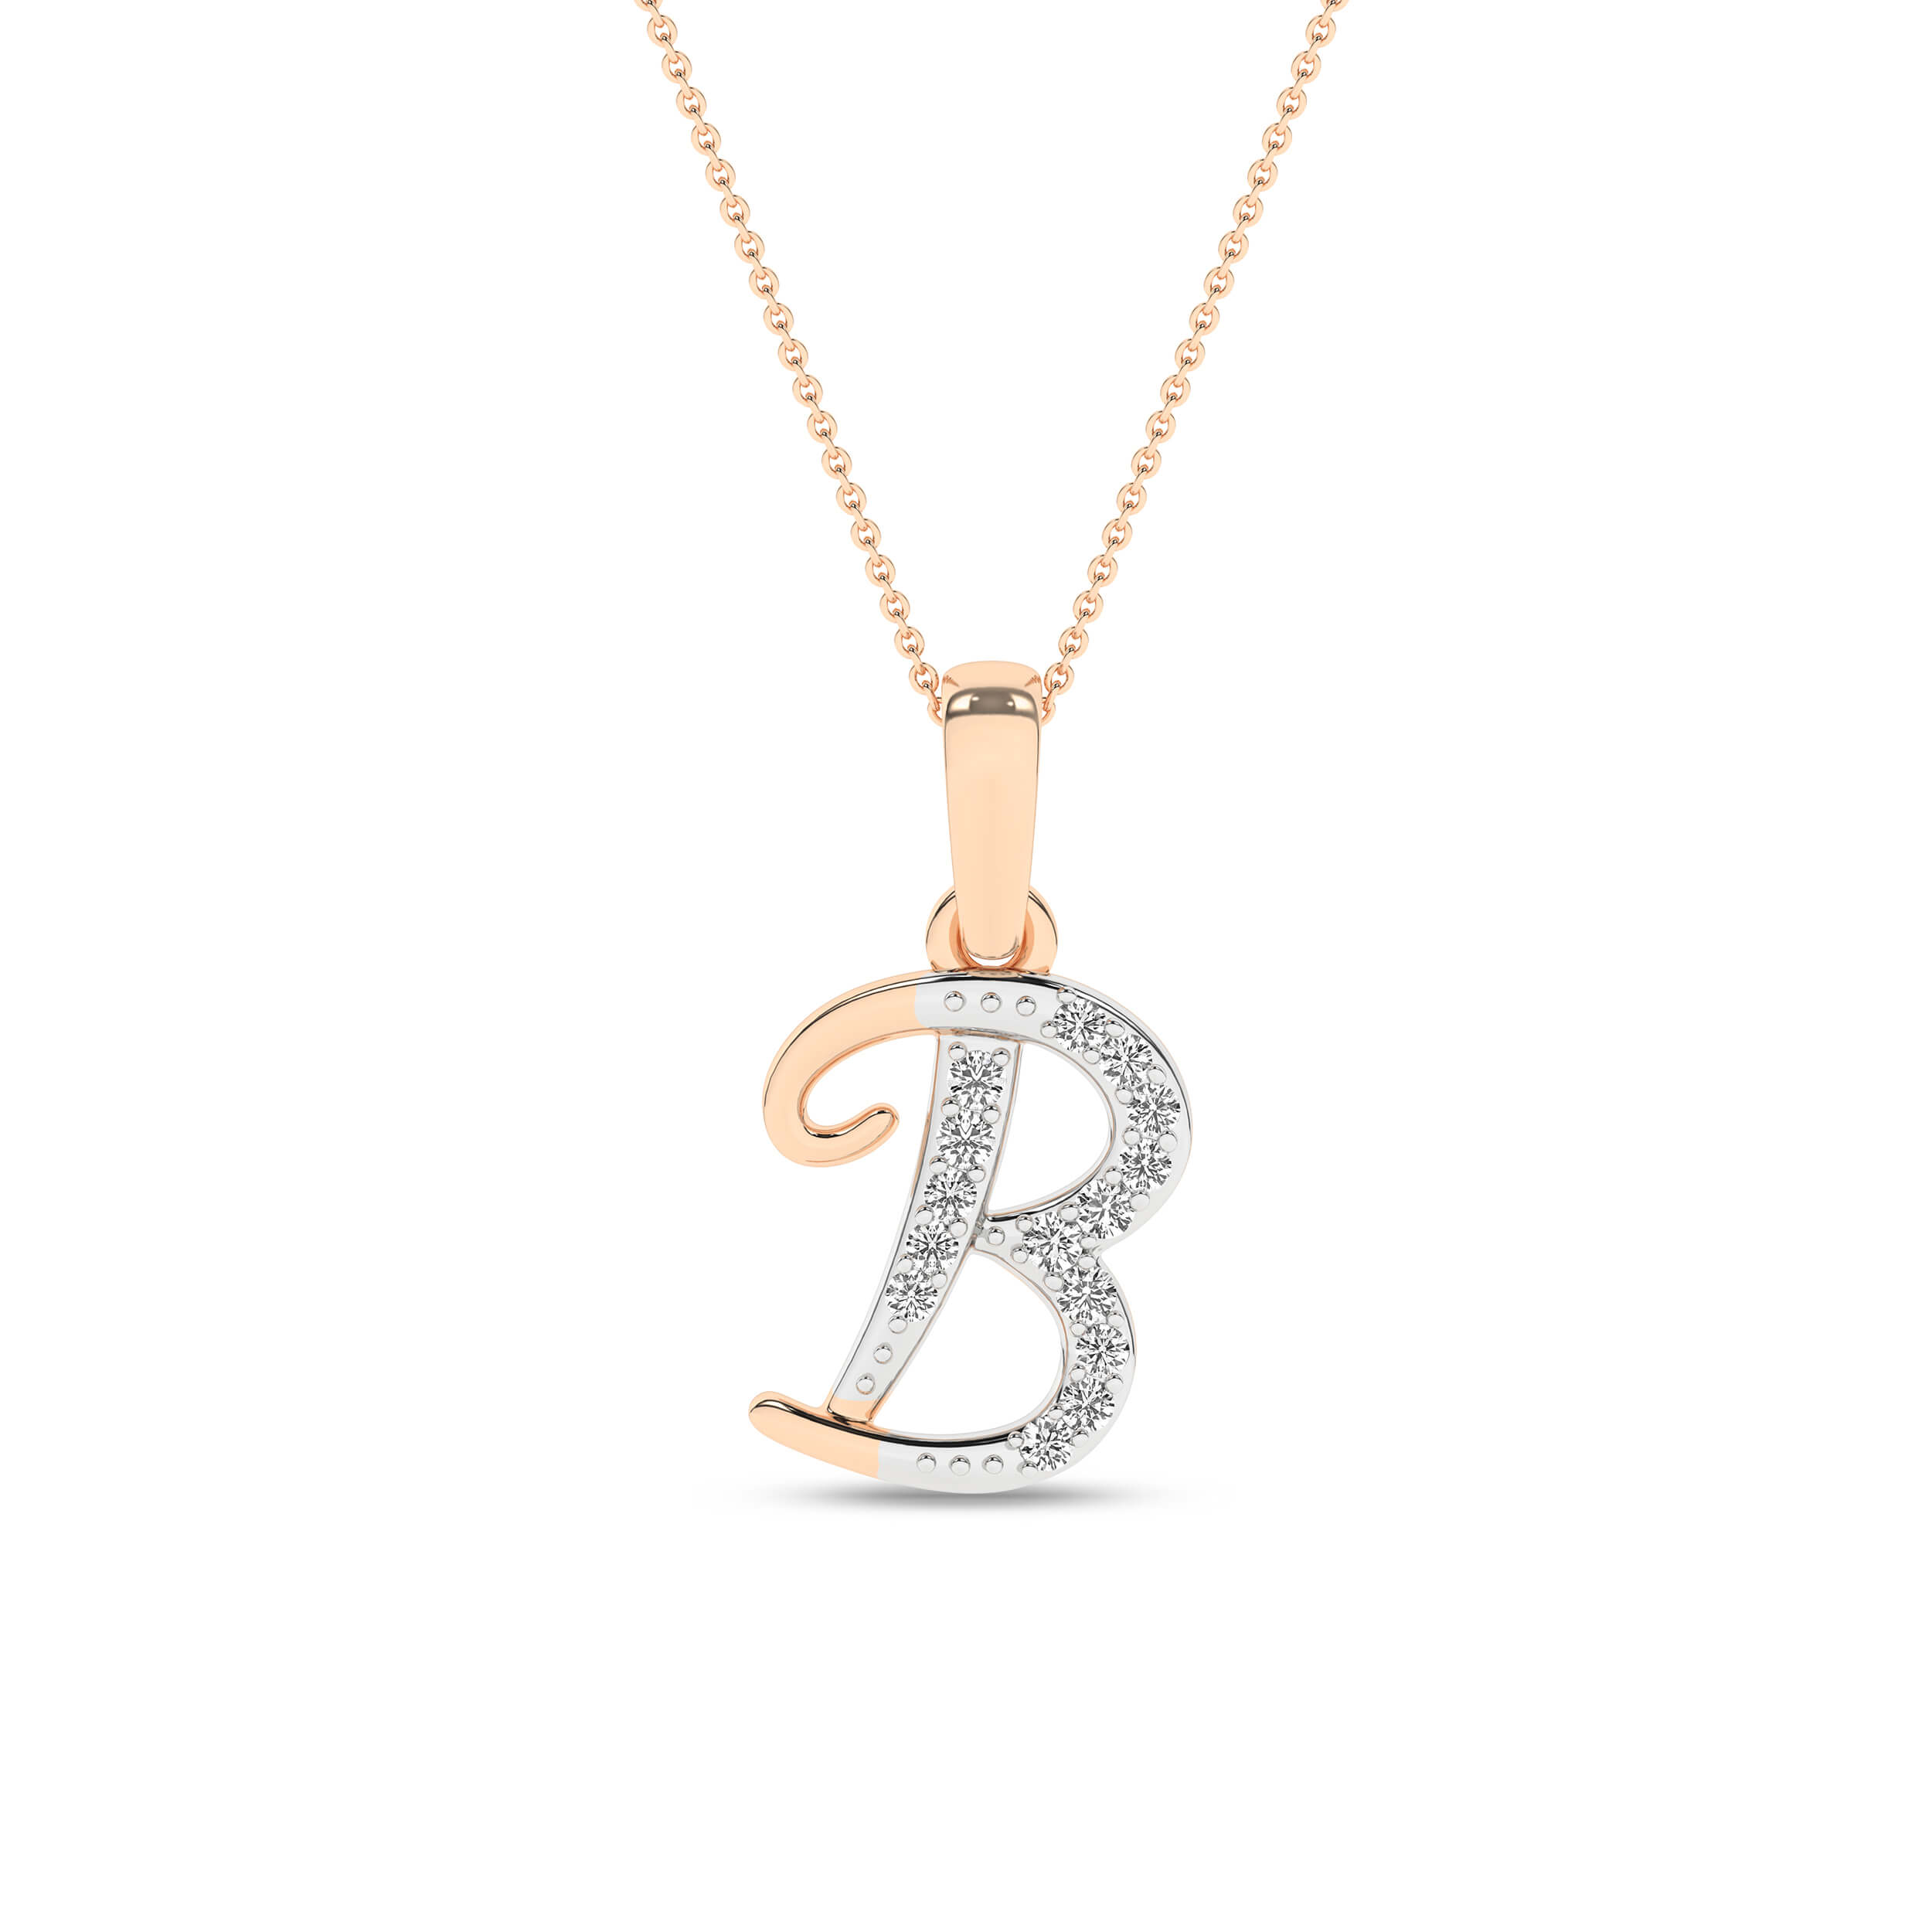 Colier litera "B" din Aur Roz 14K cu Diamante 0.04Ct, articol PF13266, previzualizare foto 1